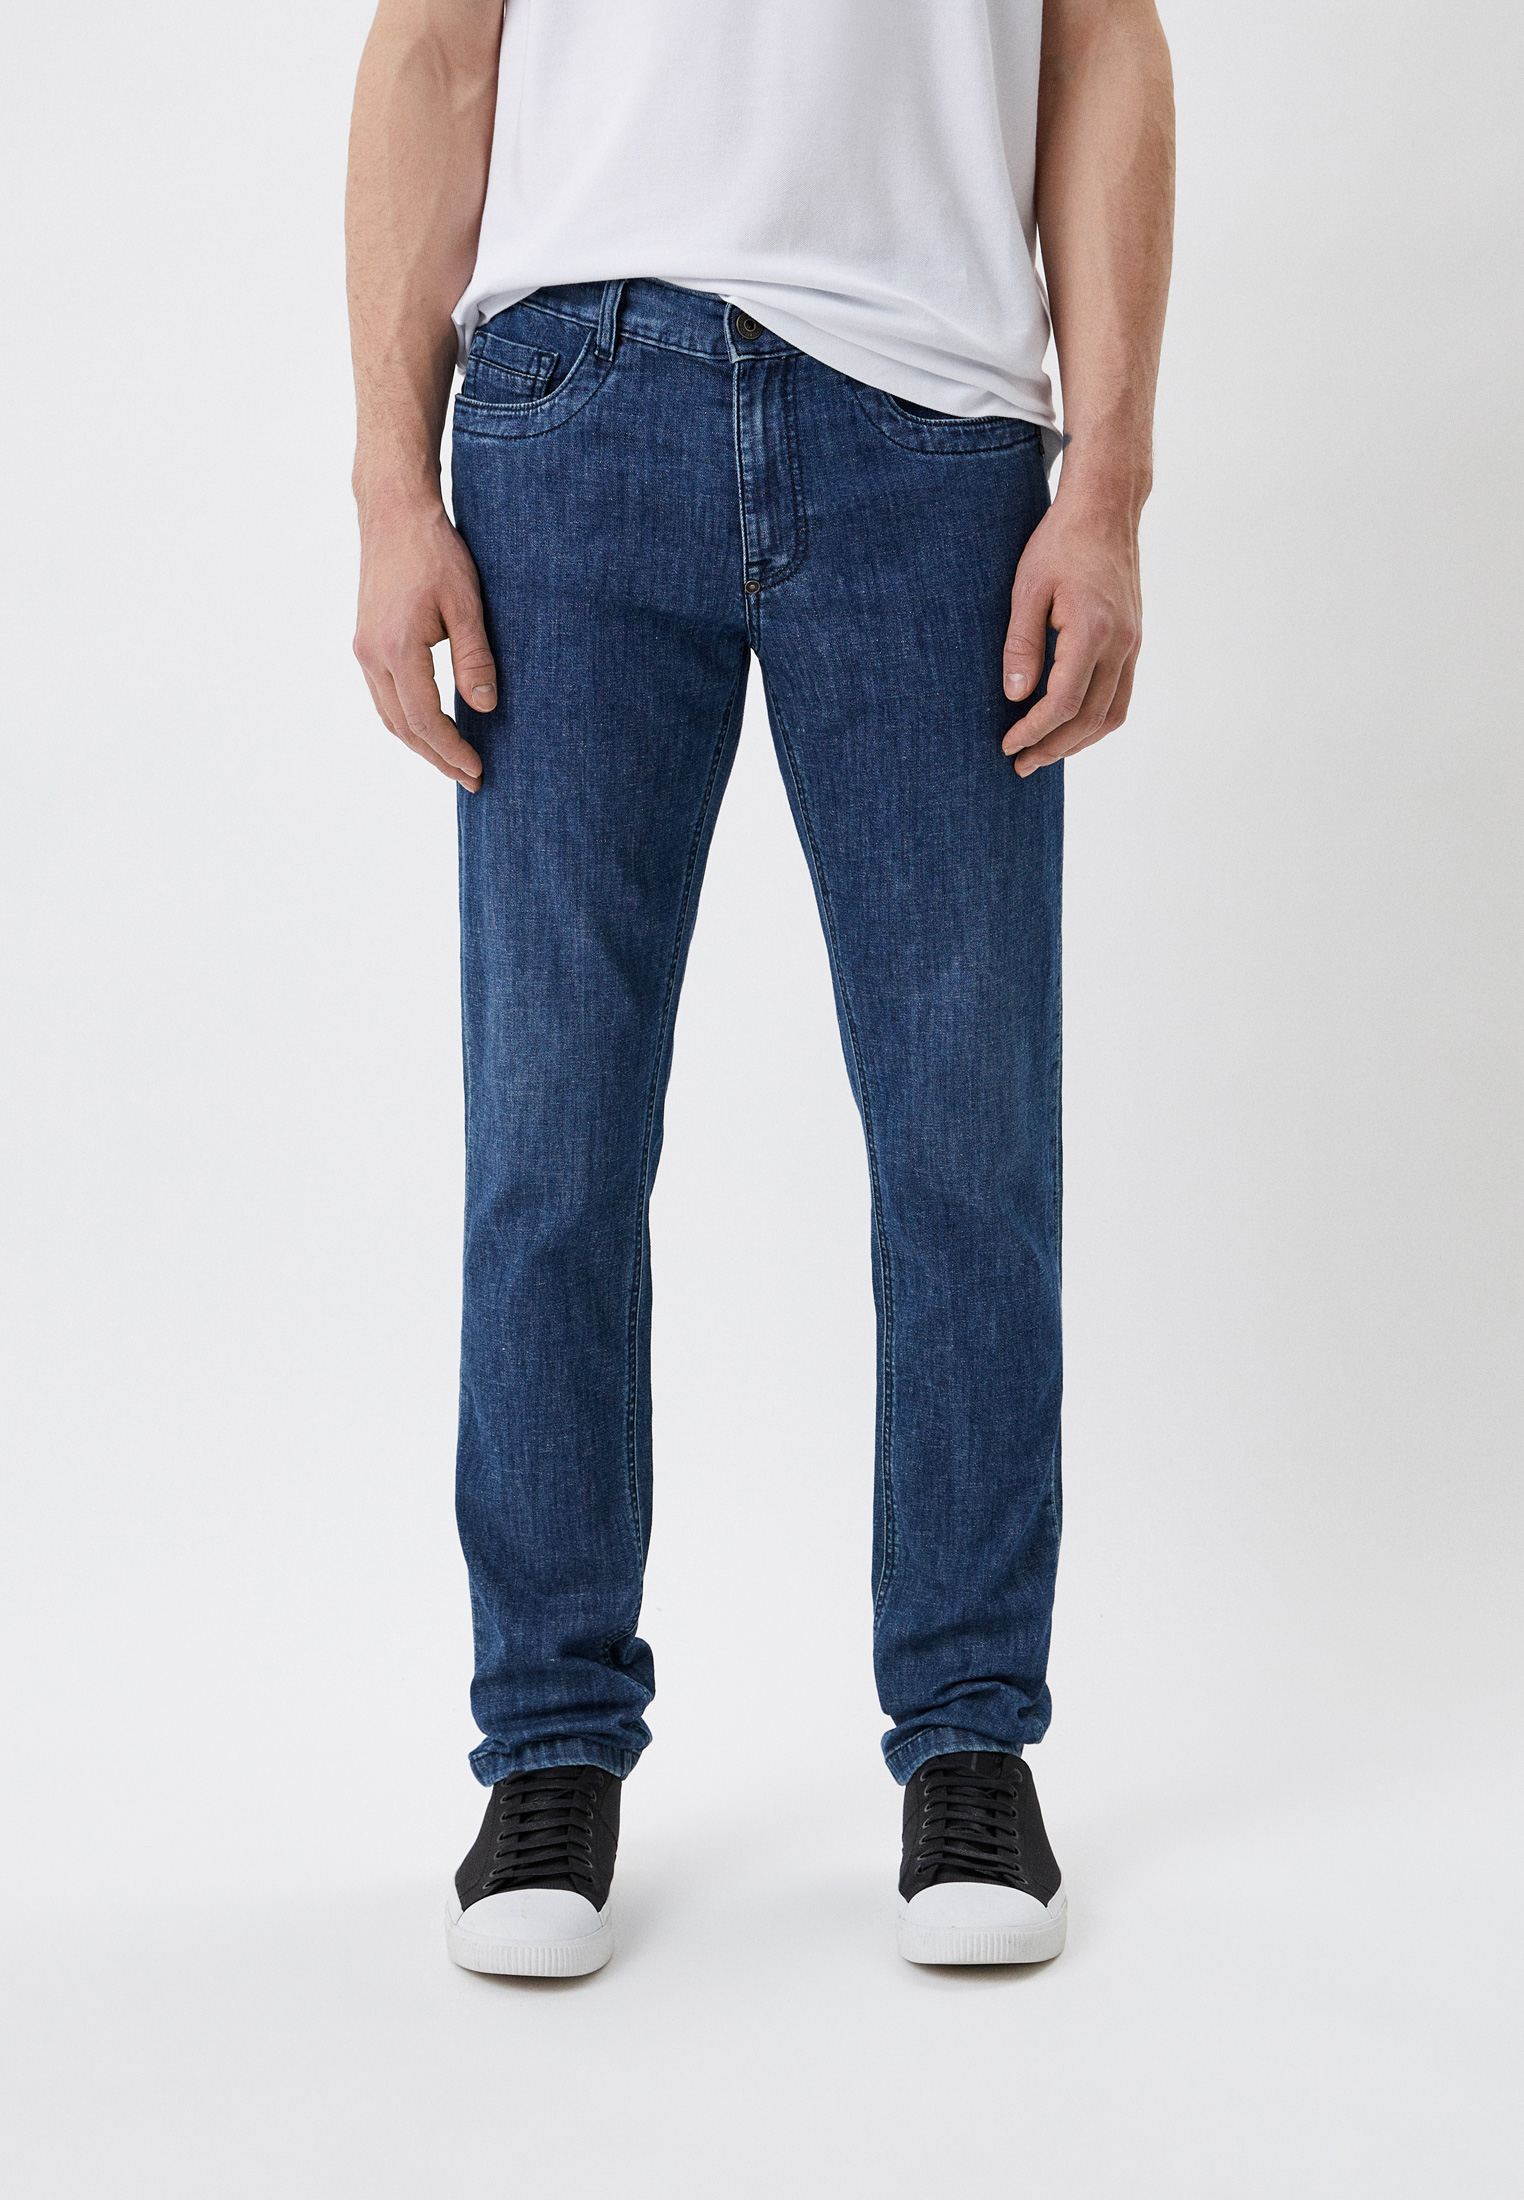 Мужские прямые джинсы Bikkembergs (Биккембергс) CQ10188S3780: изображение 1